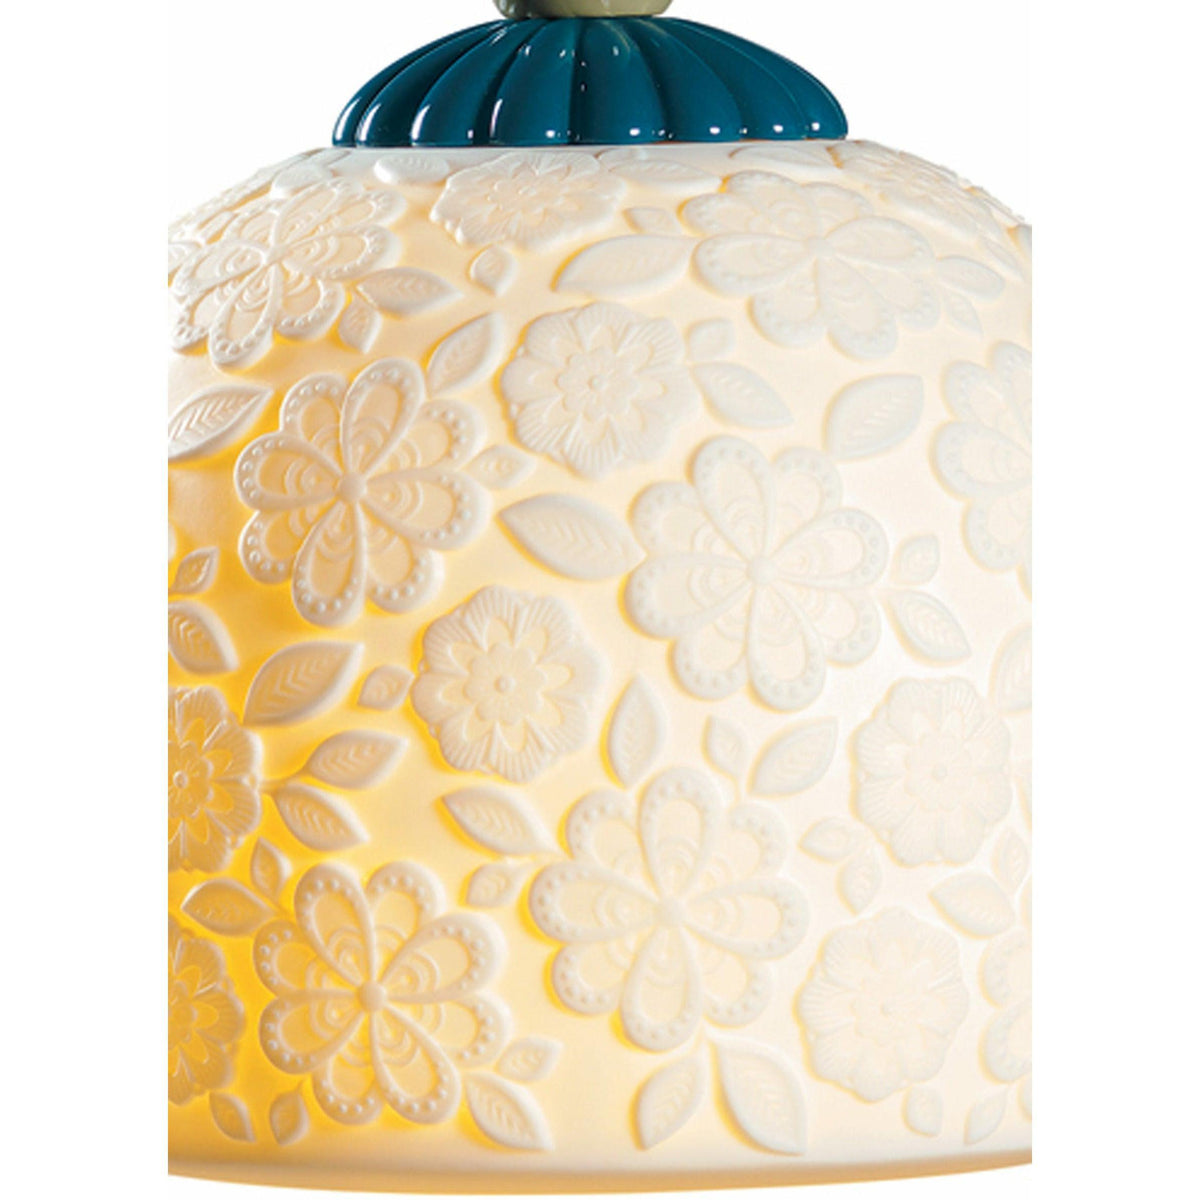 Lladro - Mademoiselle Annette Ceiling Lamp - 01023531 | Montreal Lighting & Hardware